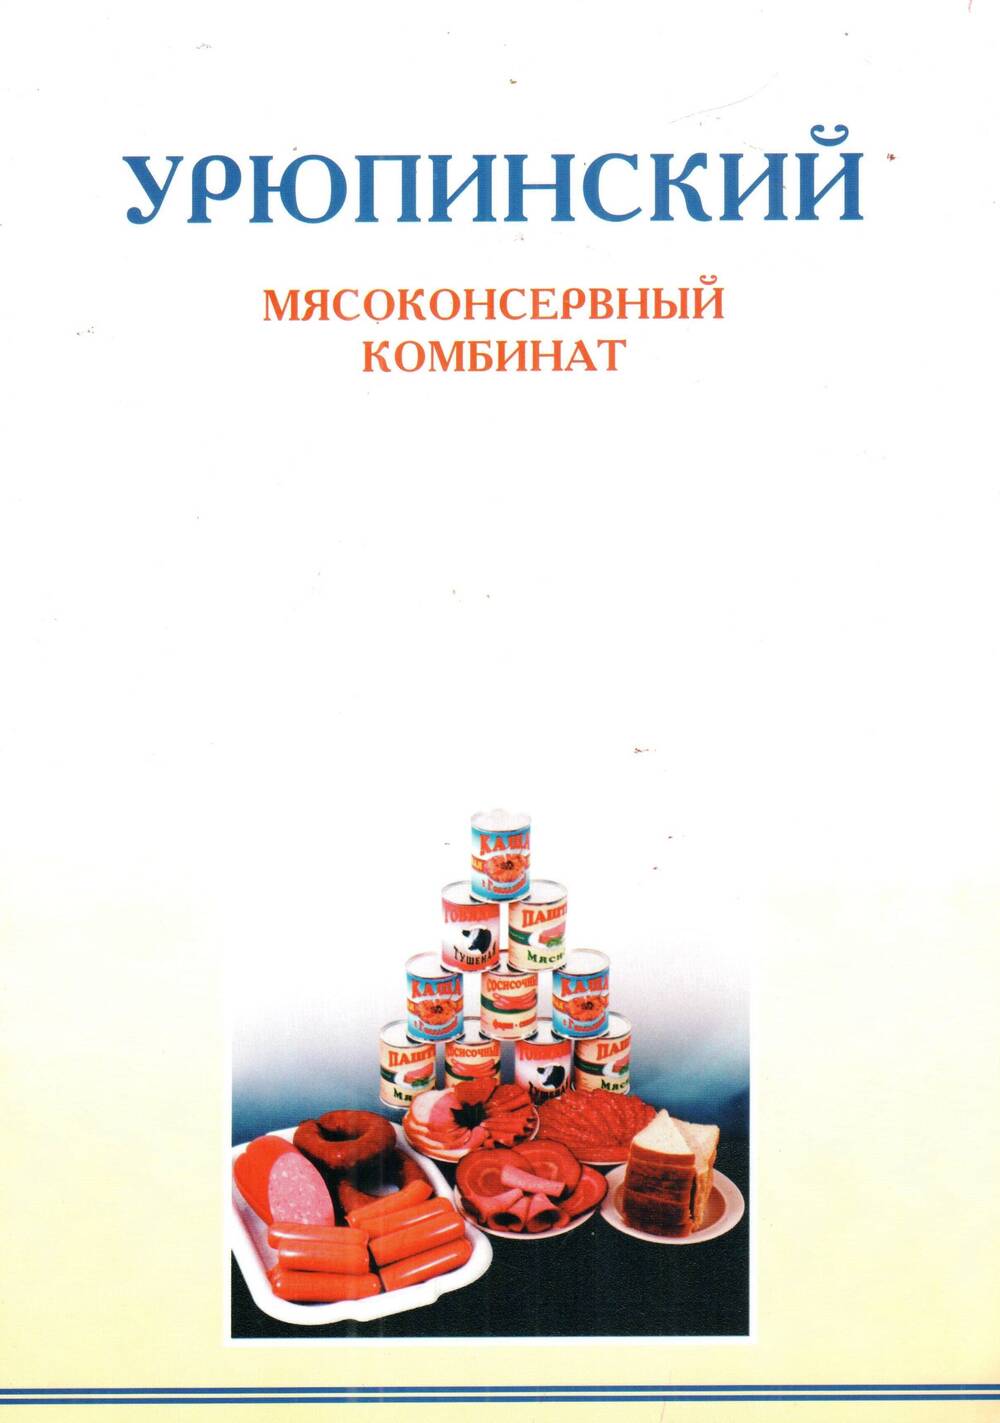 Буклет полицветной, рекламный Урюпинский мясоконсервный комбинат, Москва